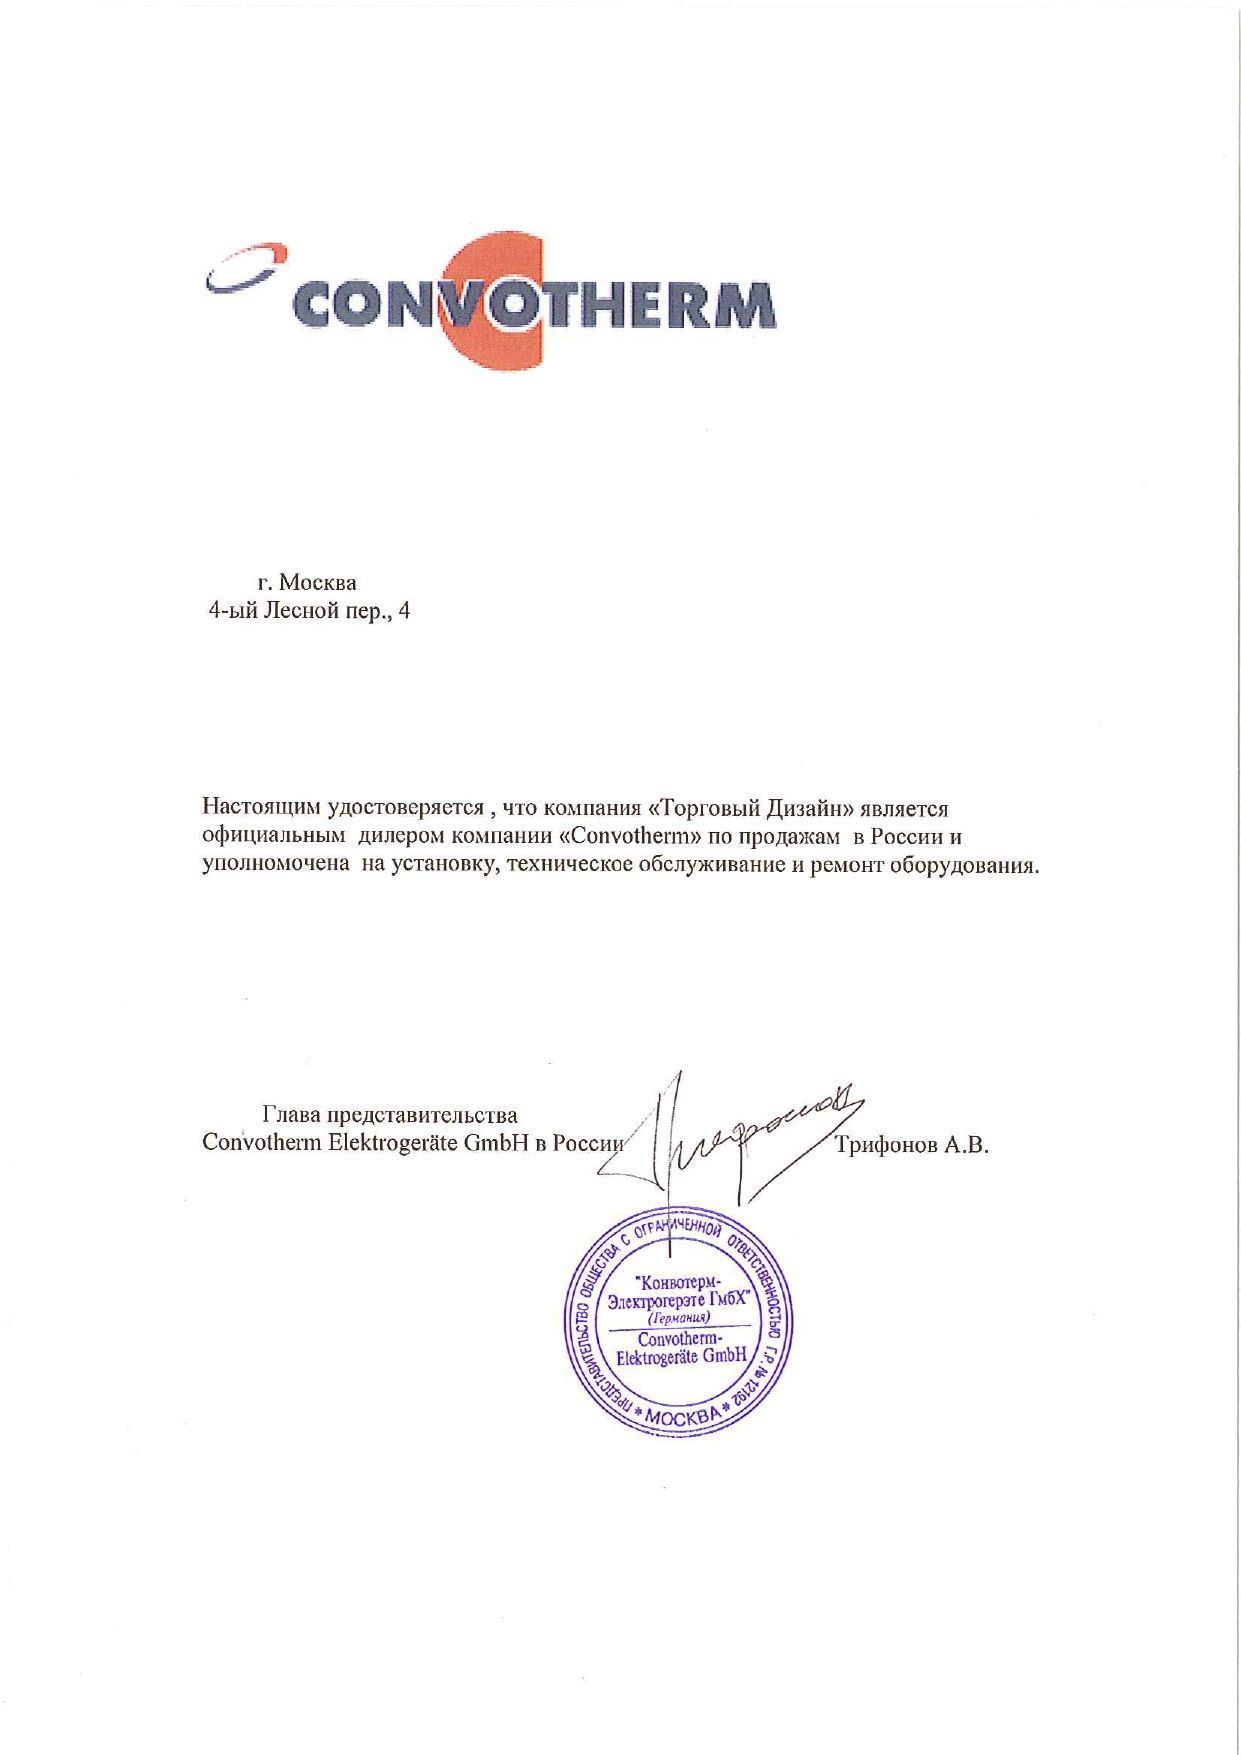 Convotherm - Москва